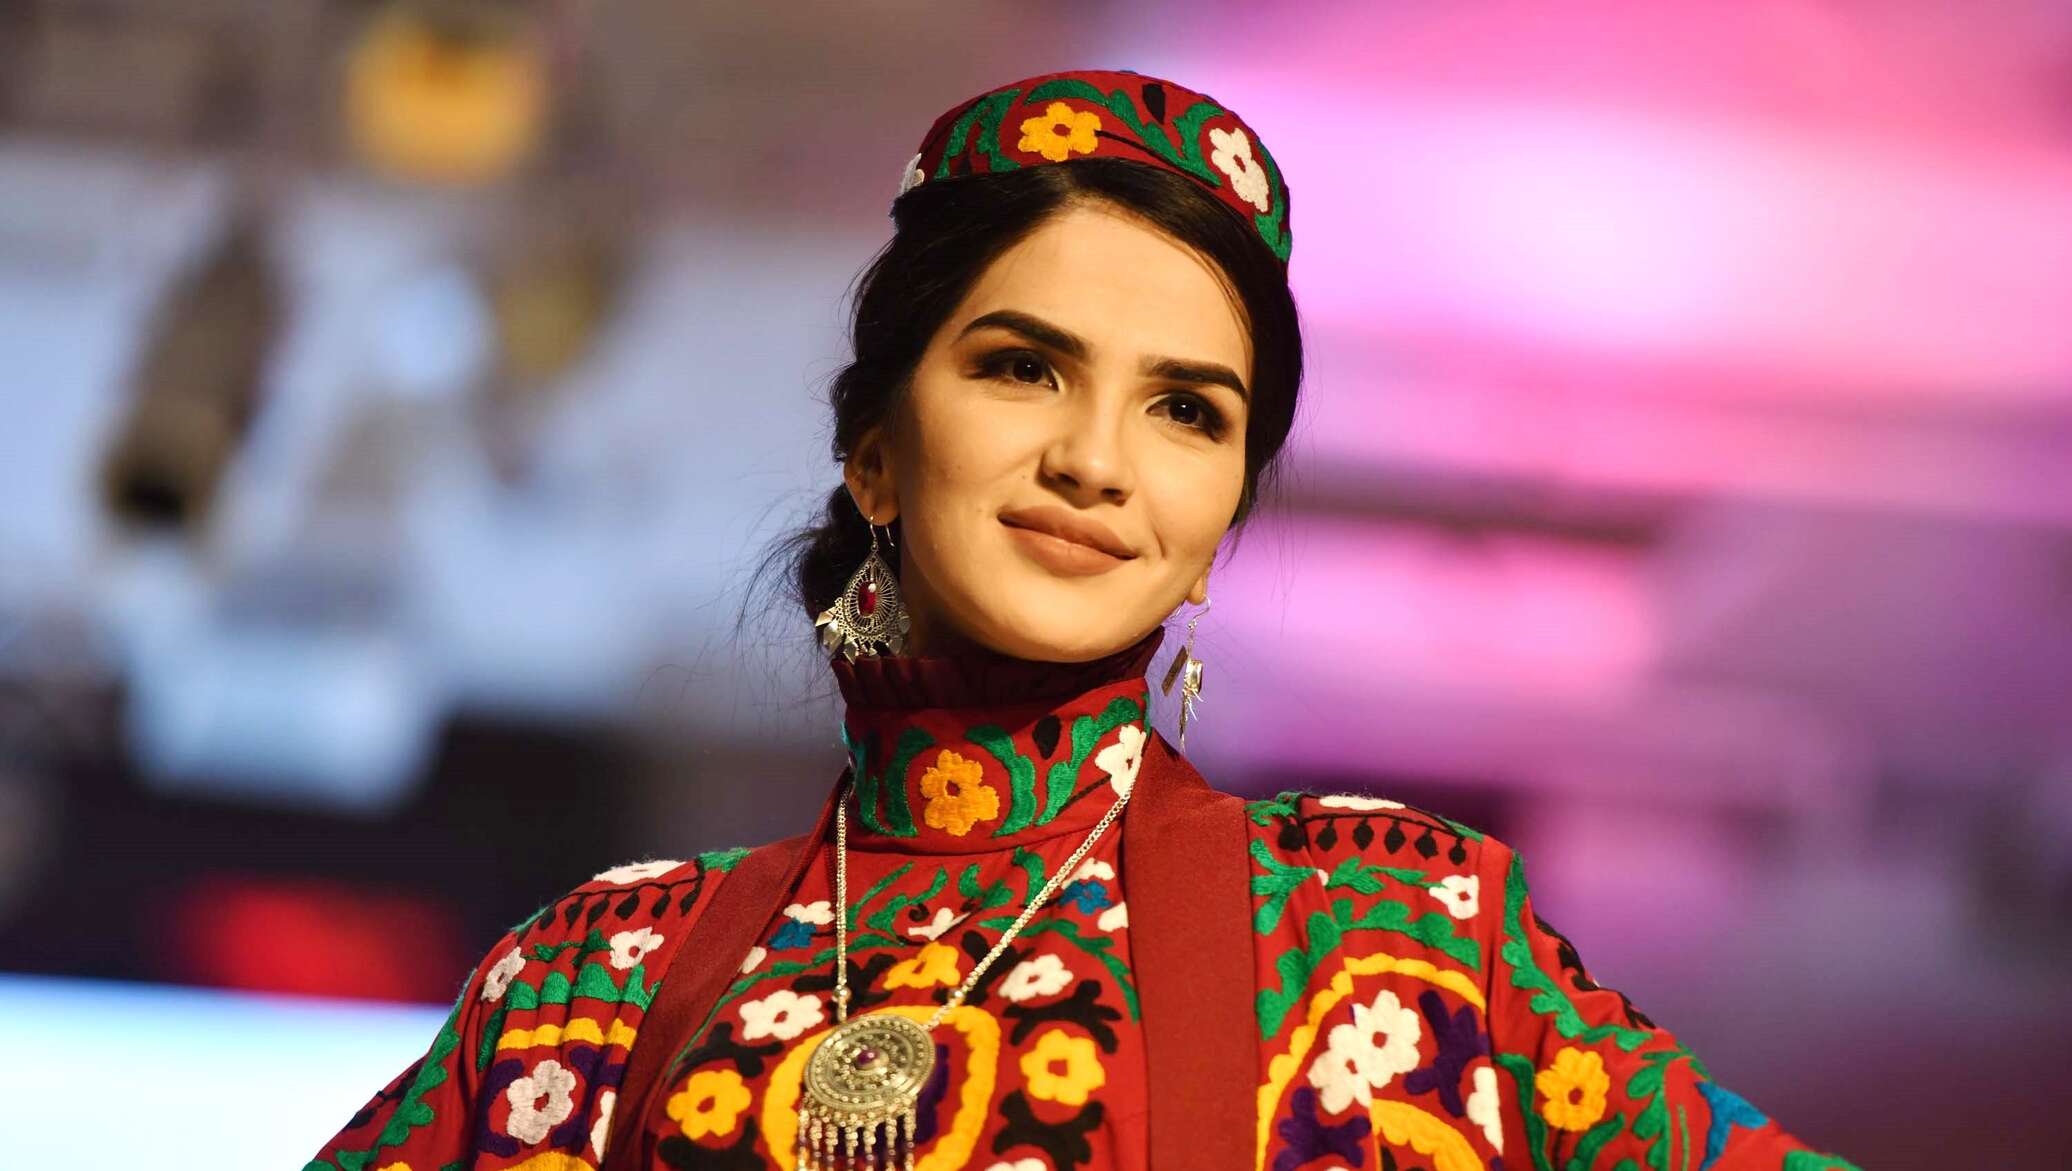 Таджикская национальная одежда женщин